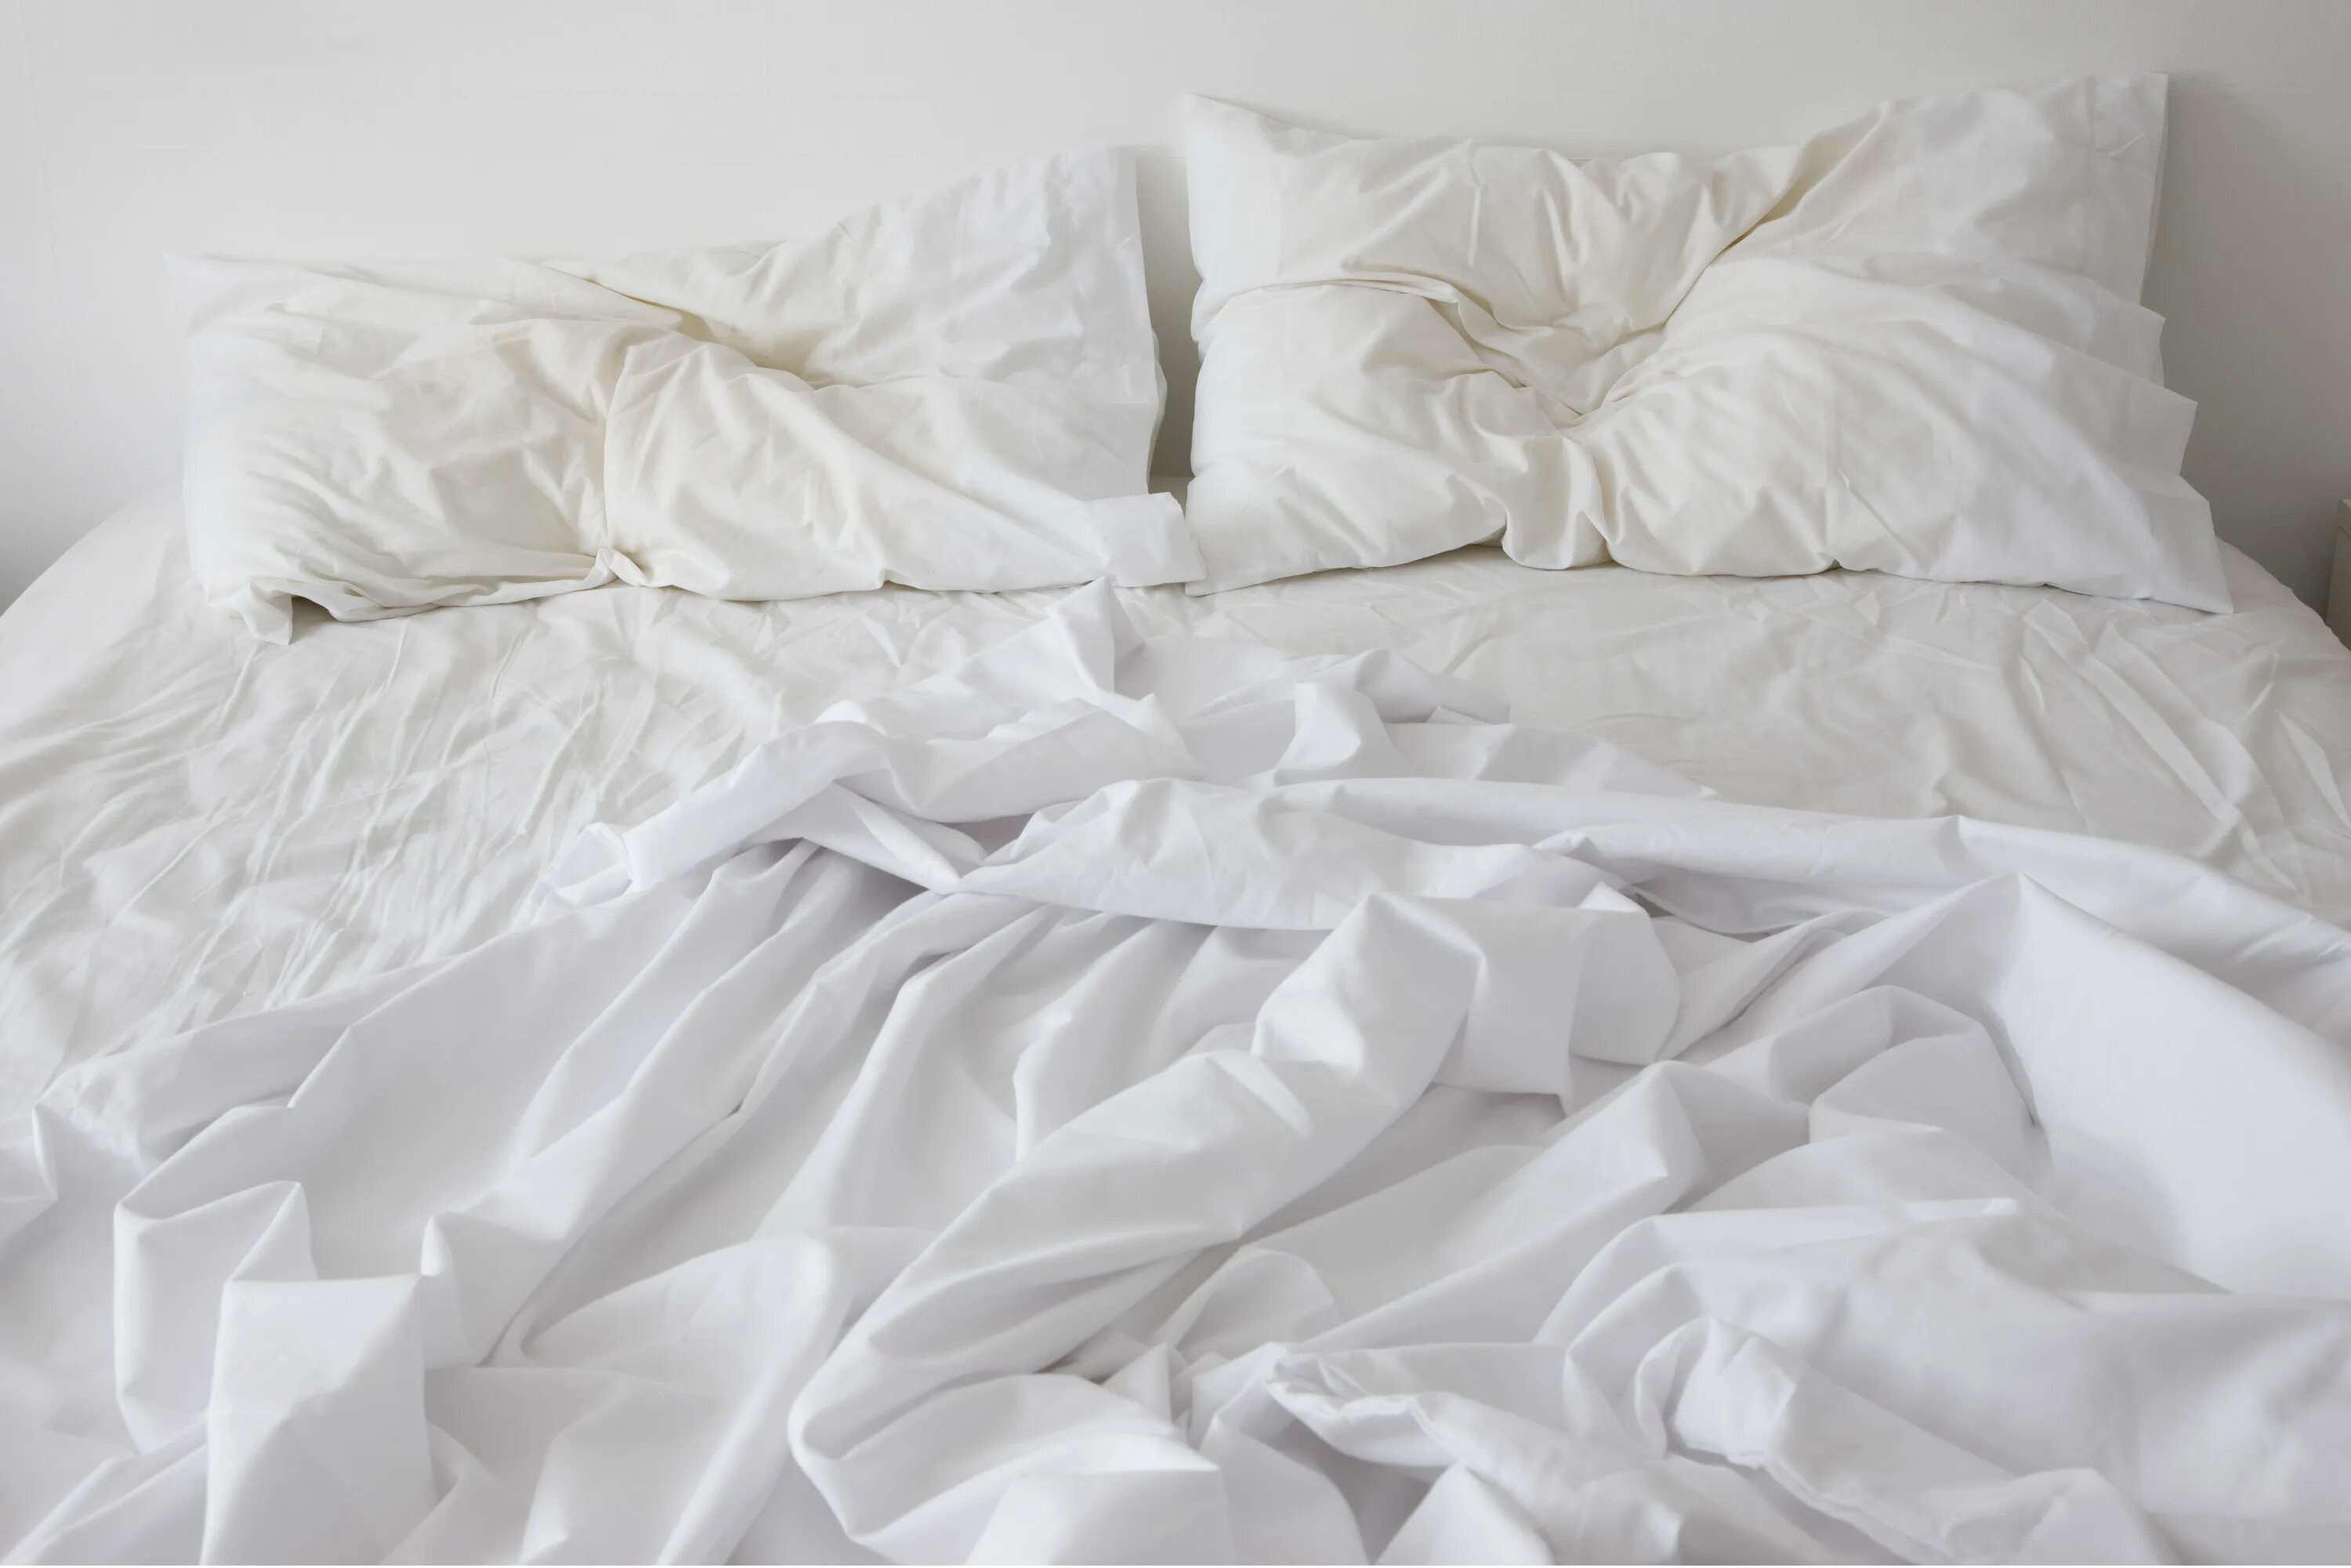 Белая кровать сверху. Мятое постельное белье. Смятая подушка. Незаправленная кровать. До скрытых встреч на мятых простынях